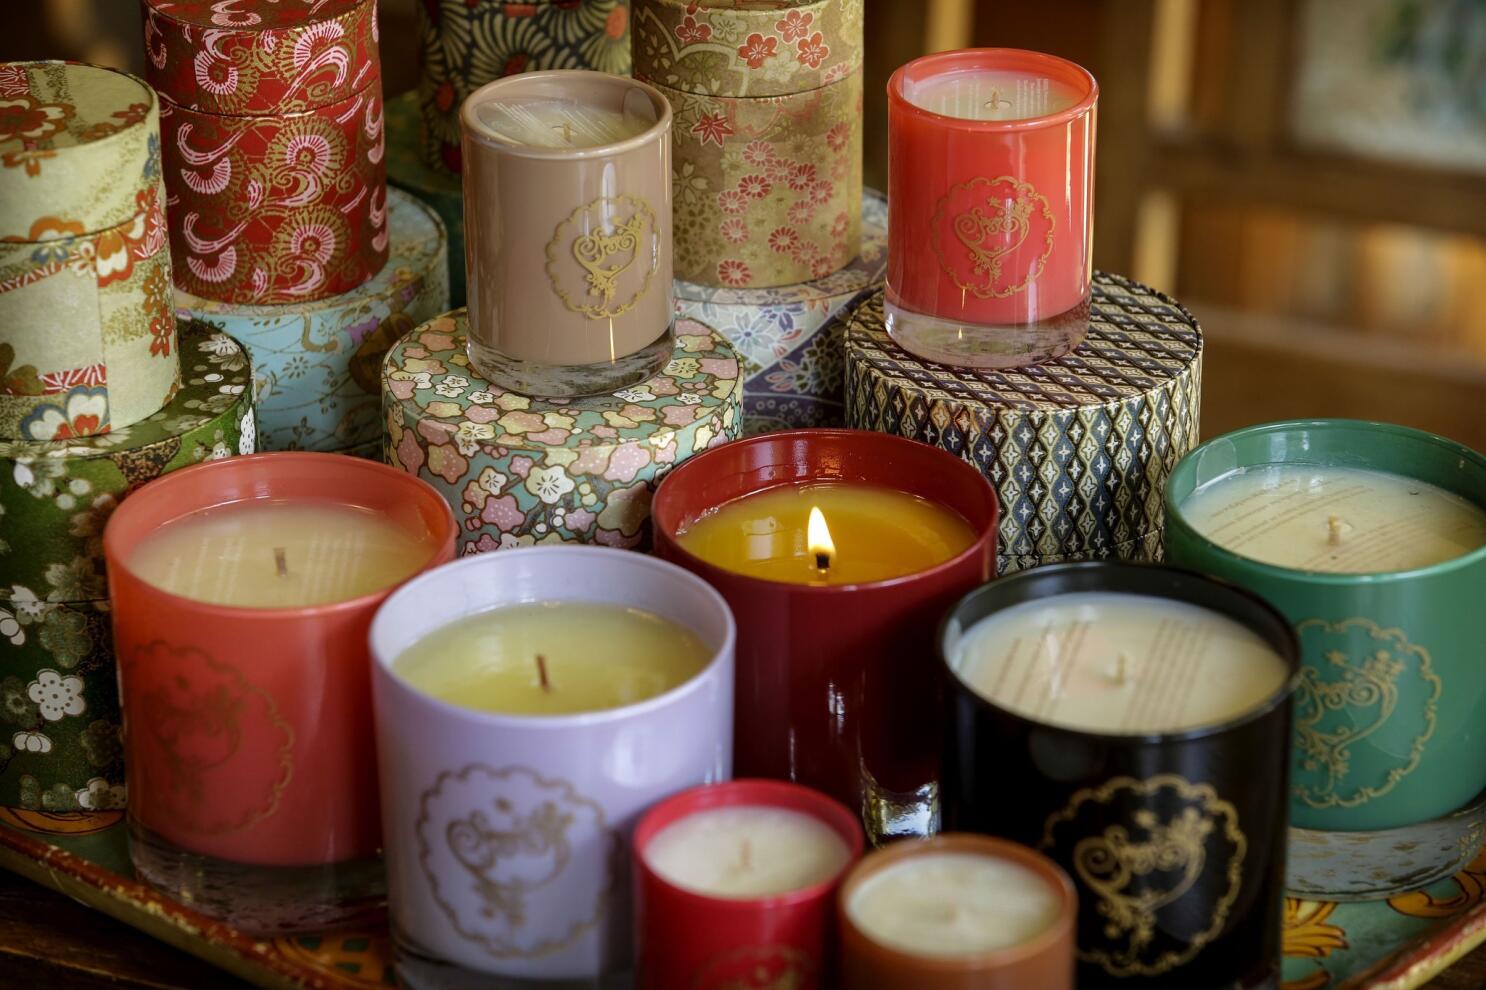 Enciendes velas aromáticas en casa? Una experta revela qué riesgos tienen